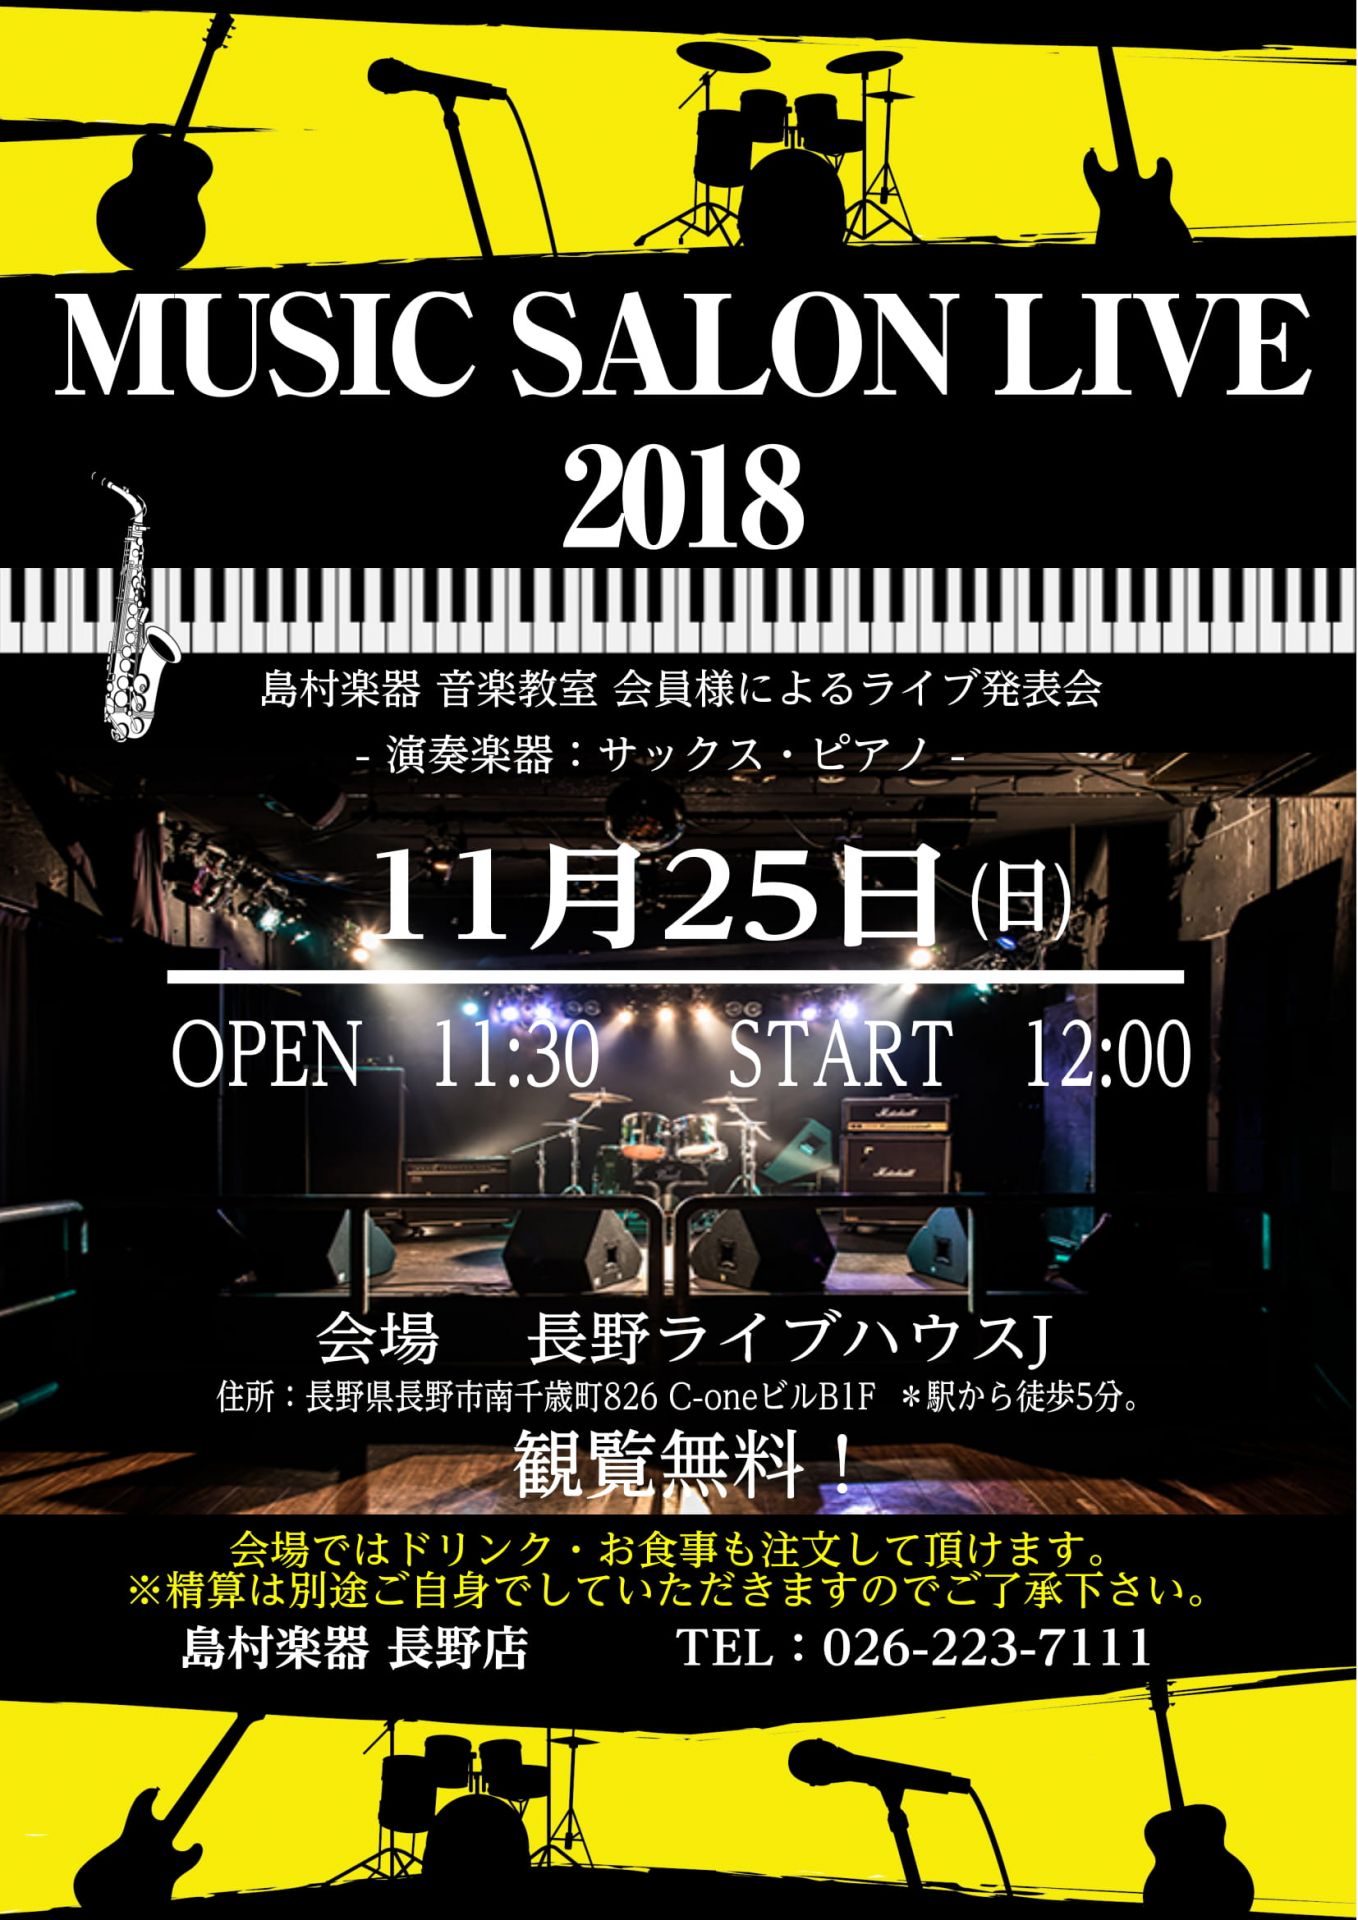 【音楽教室】「SALON LIVE 2018」